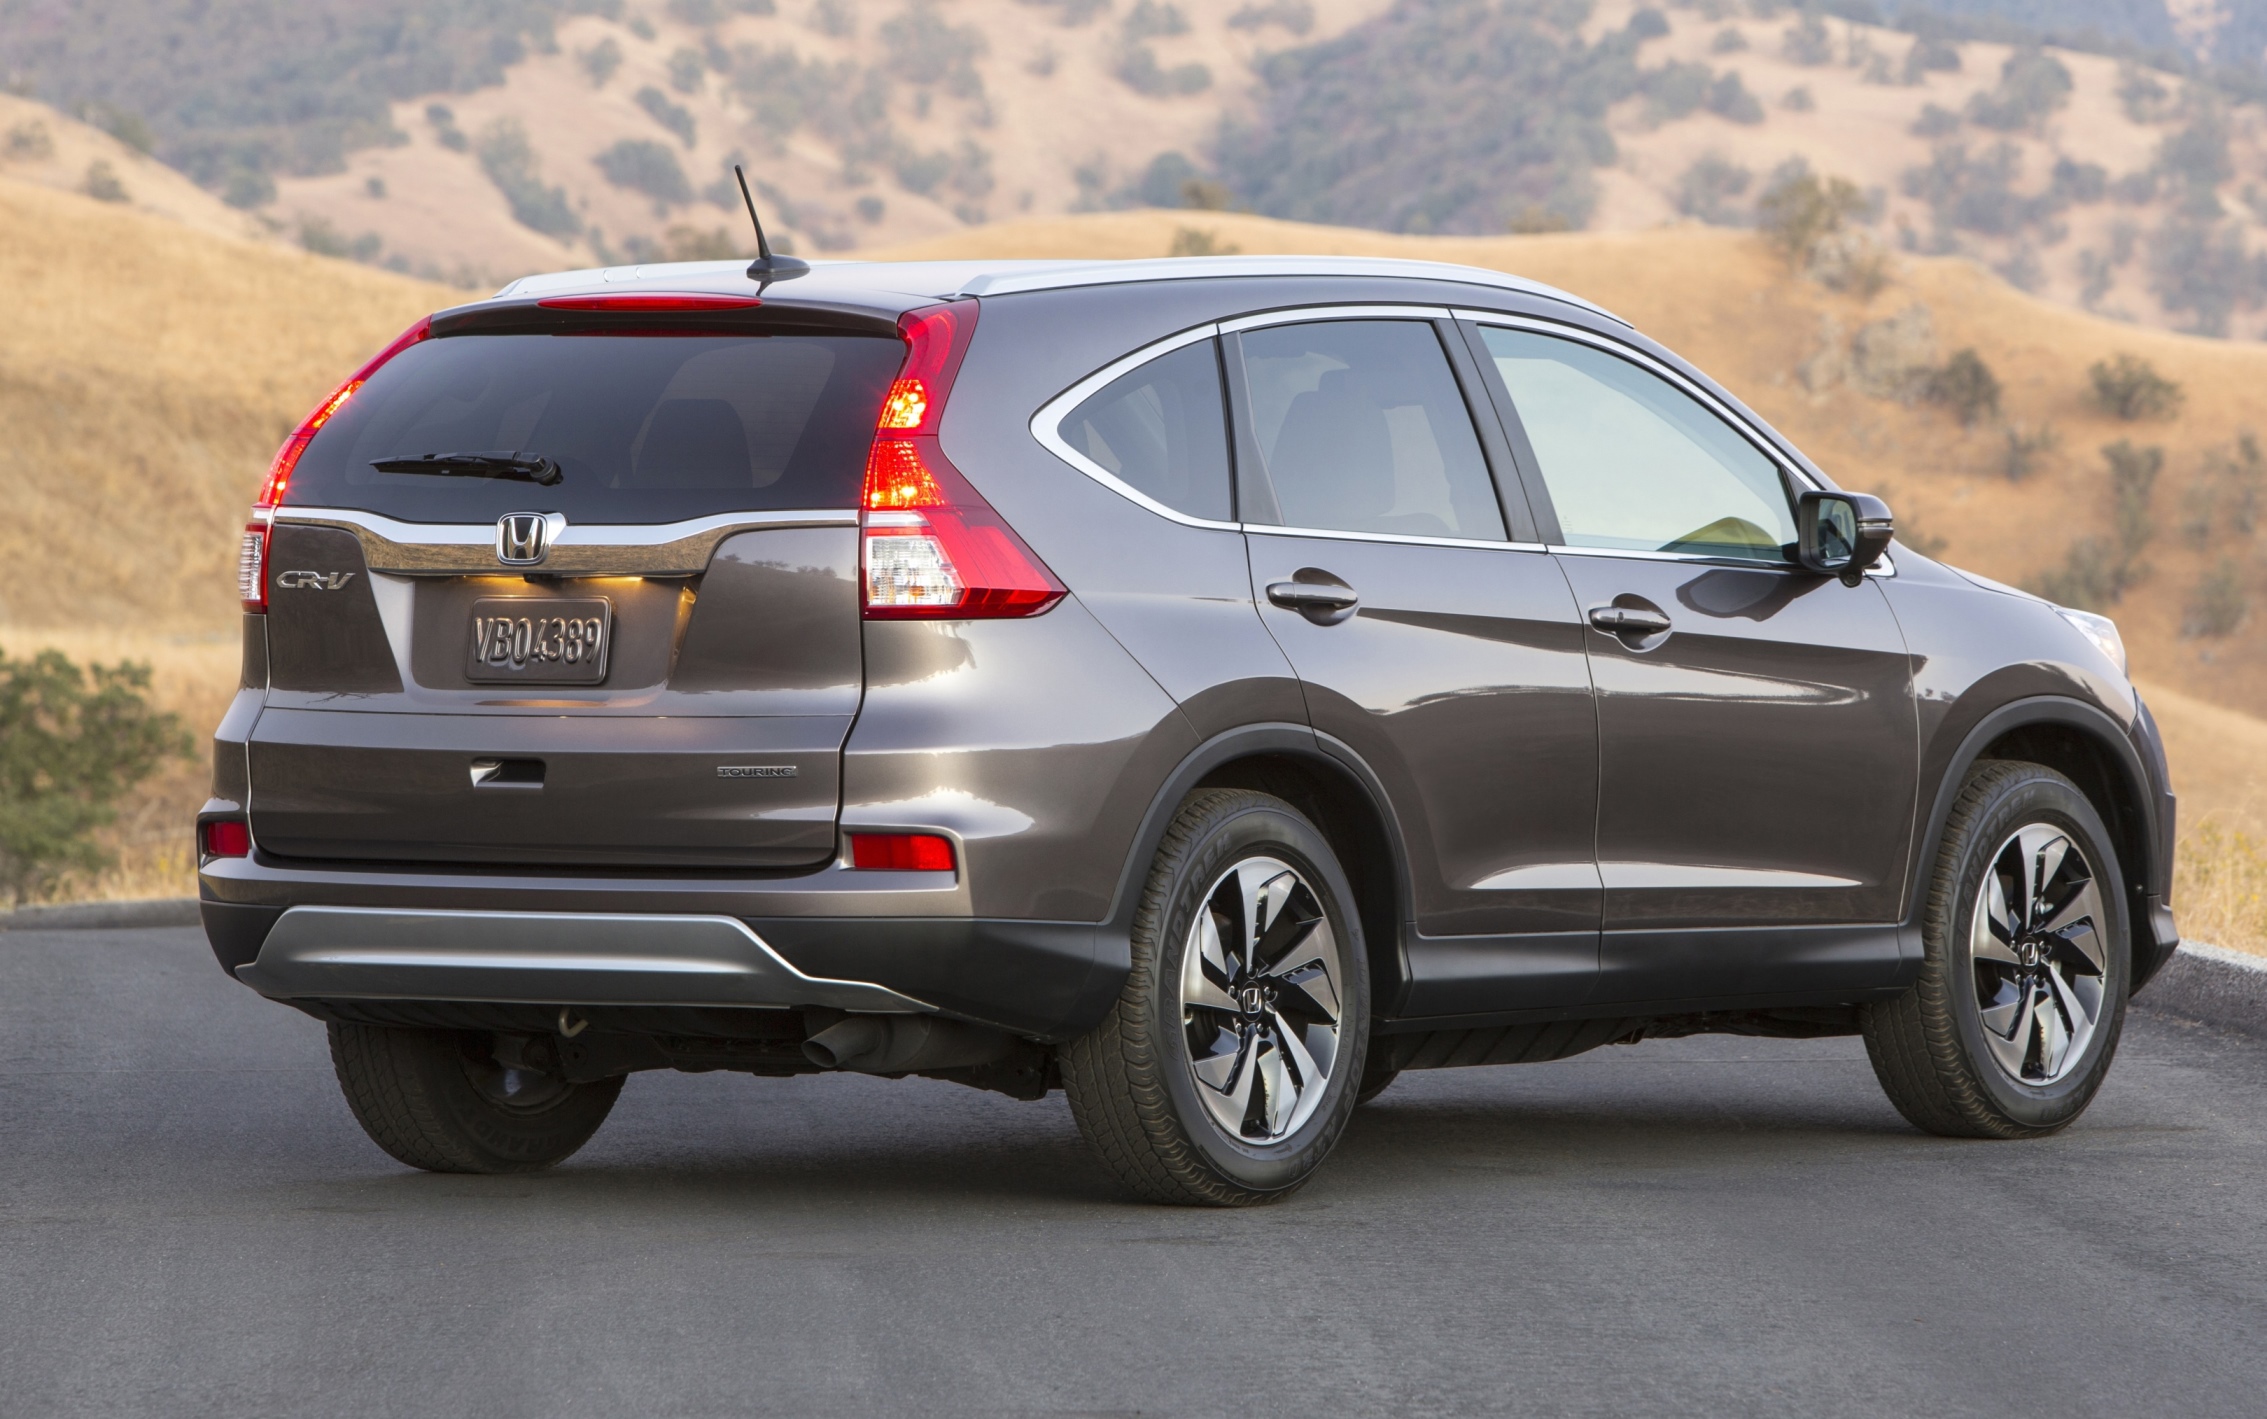 2015 Honda CRV Revealed With More Torque, More Tech and